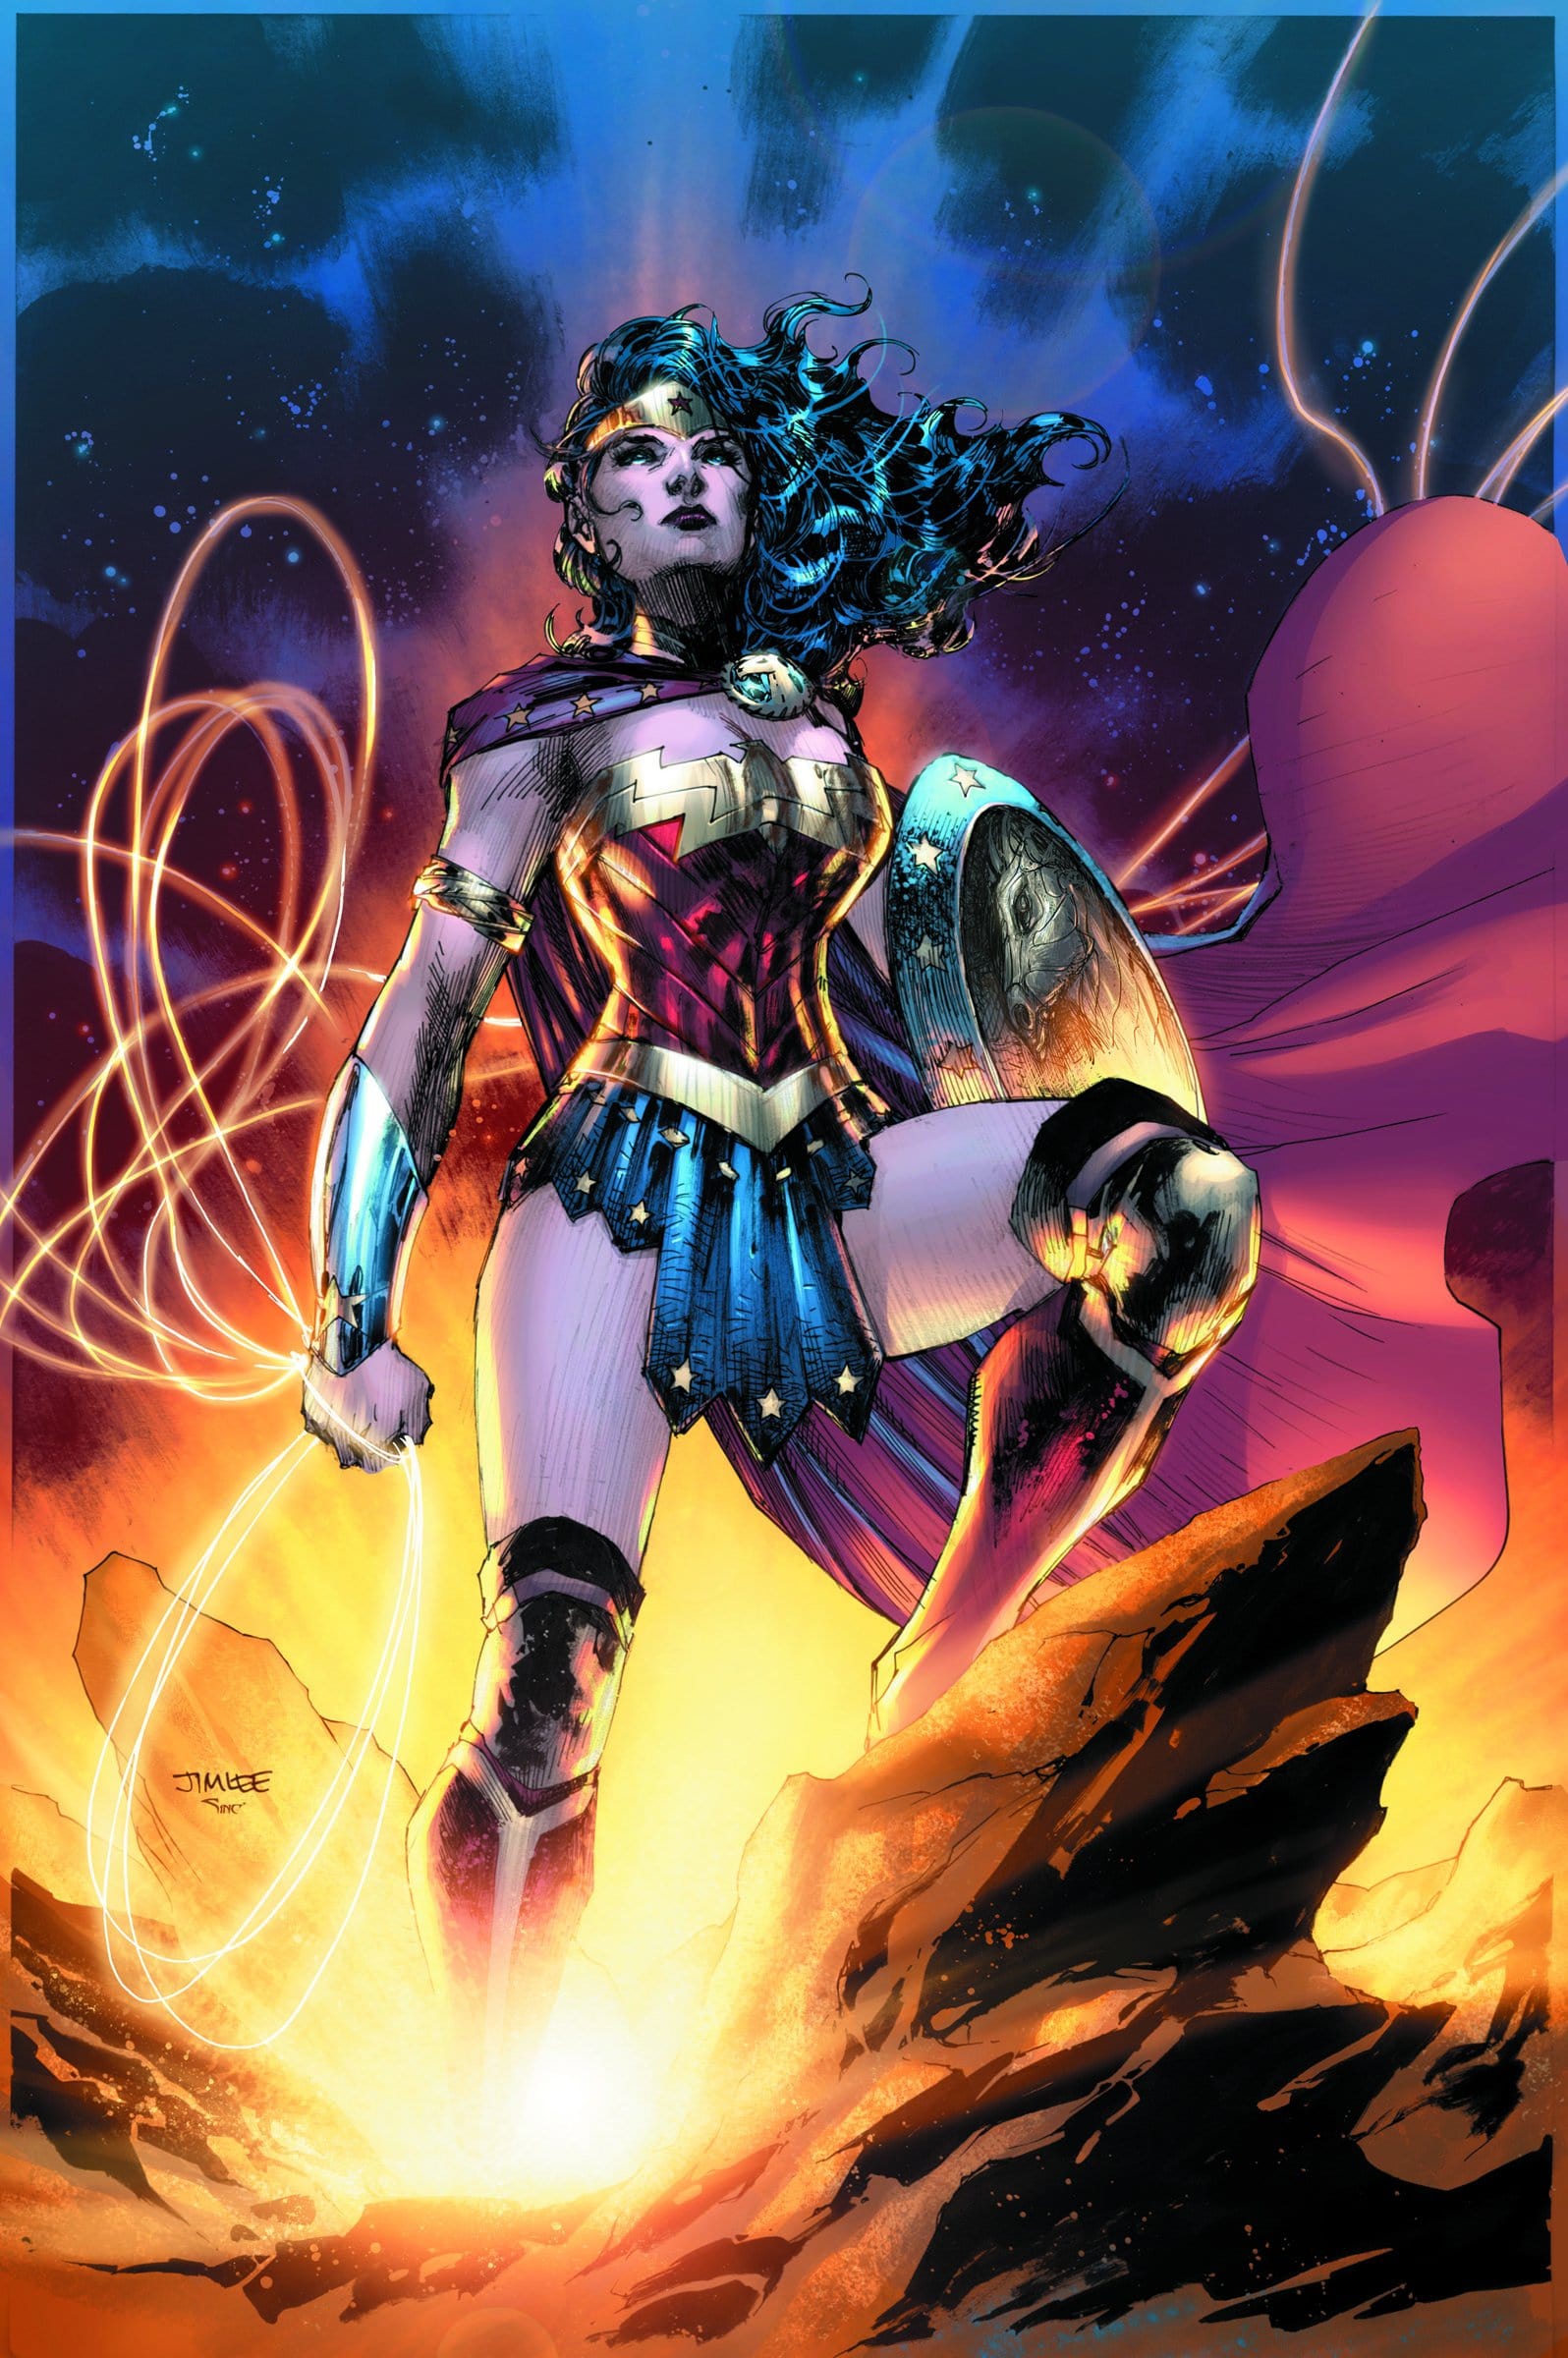 Wonder Woman standing tall.